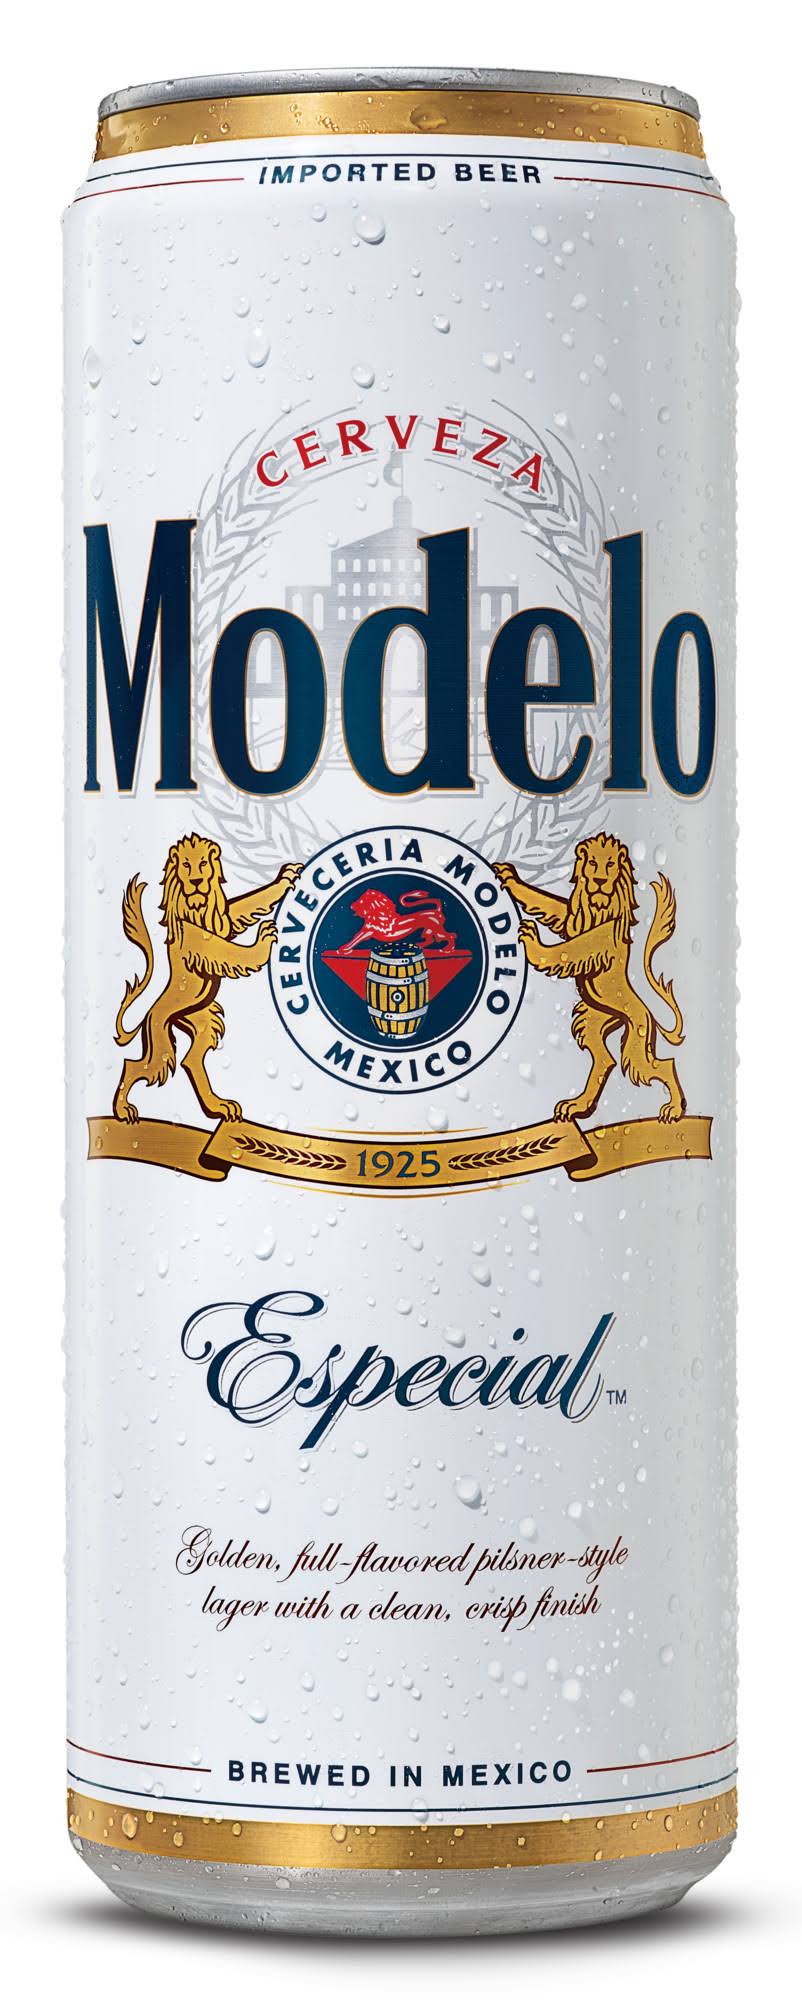 Modelo Especial Beer - 24fl oz